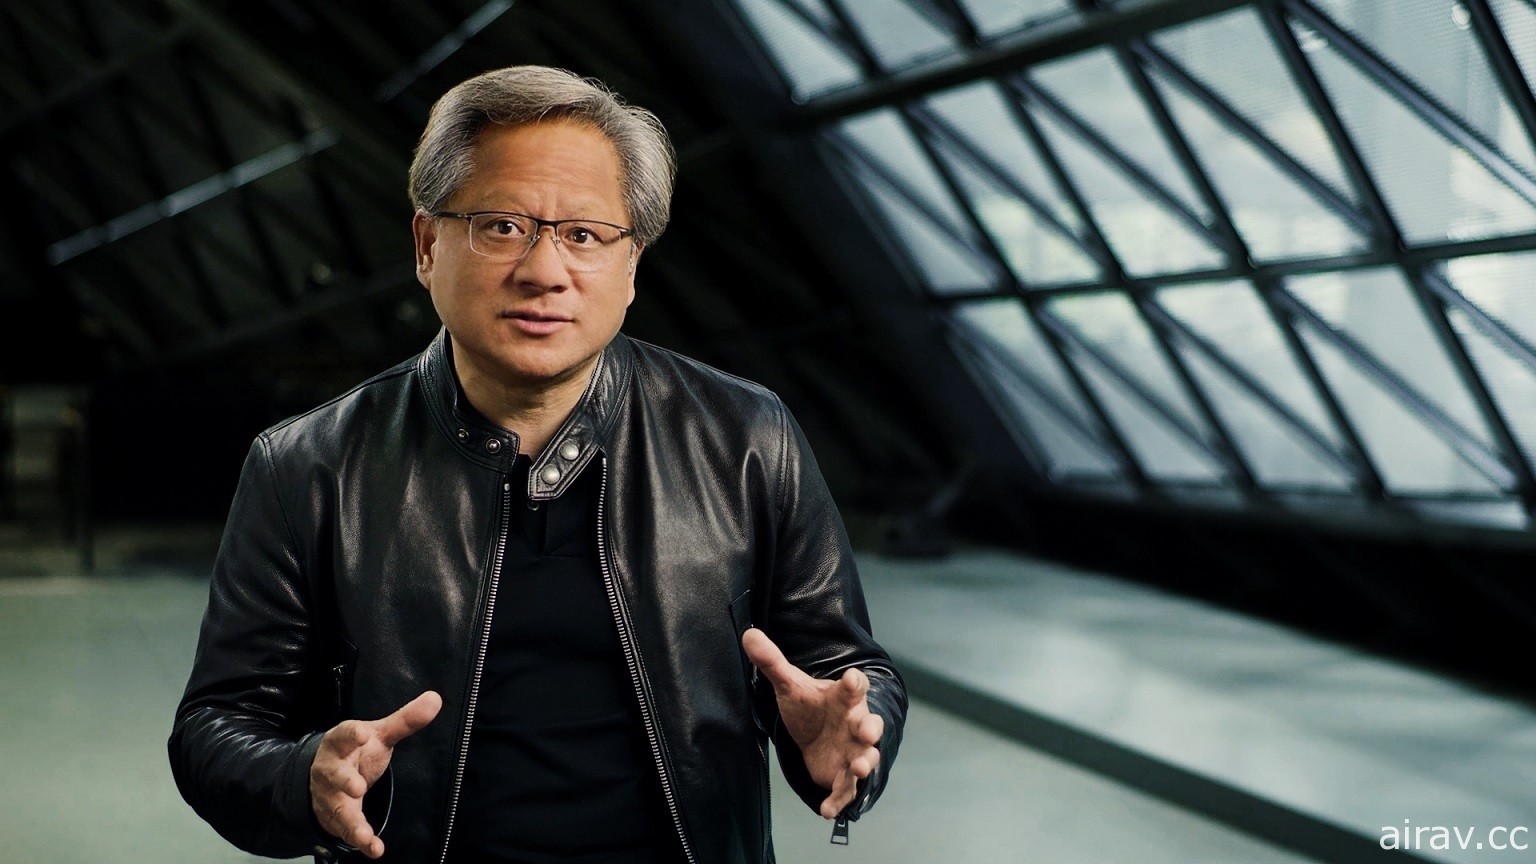 NVIDIA 宣布 10 月舉行線上 GPU 技術大會 預計有執行長黃仁勳的預錄主題演說等